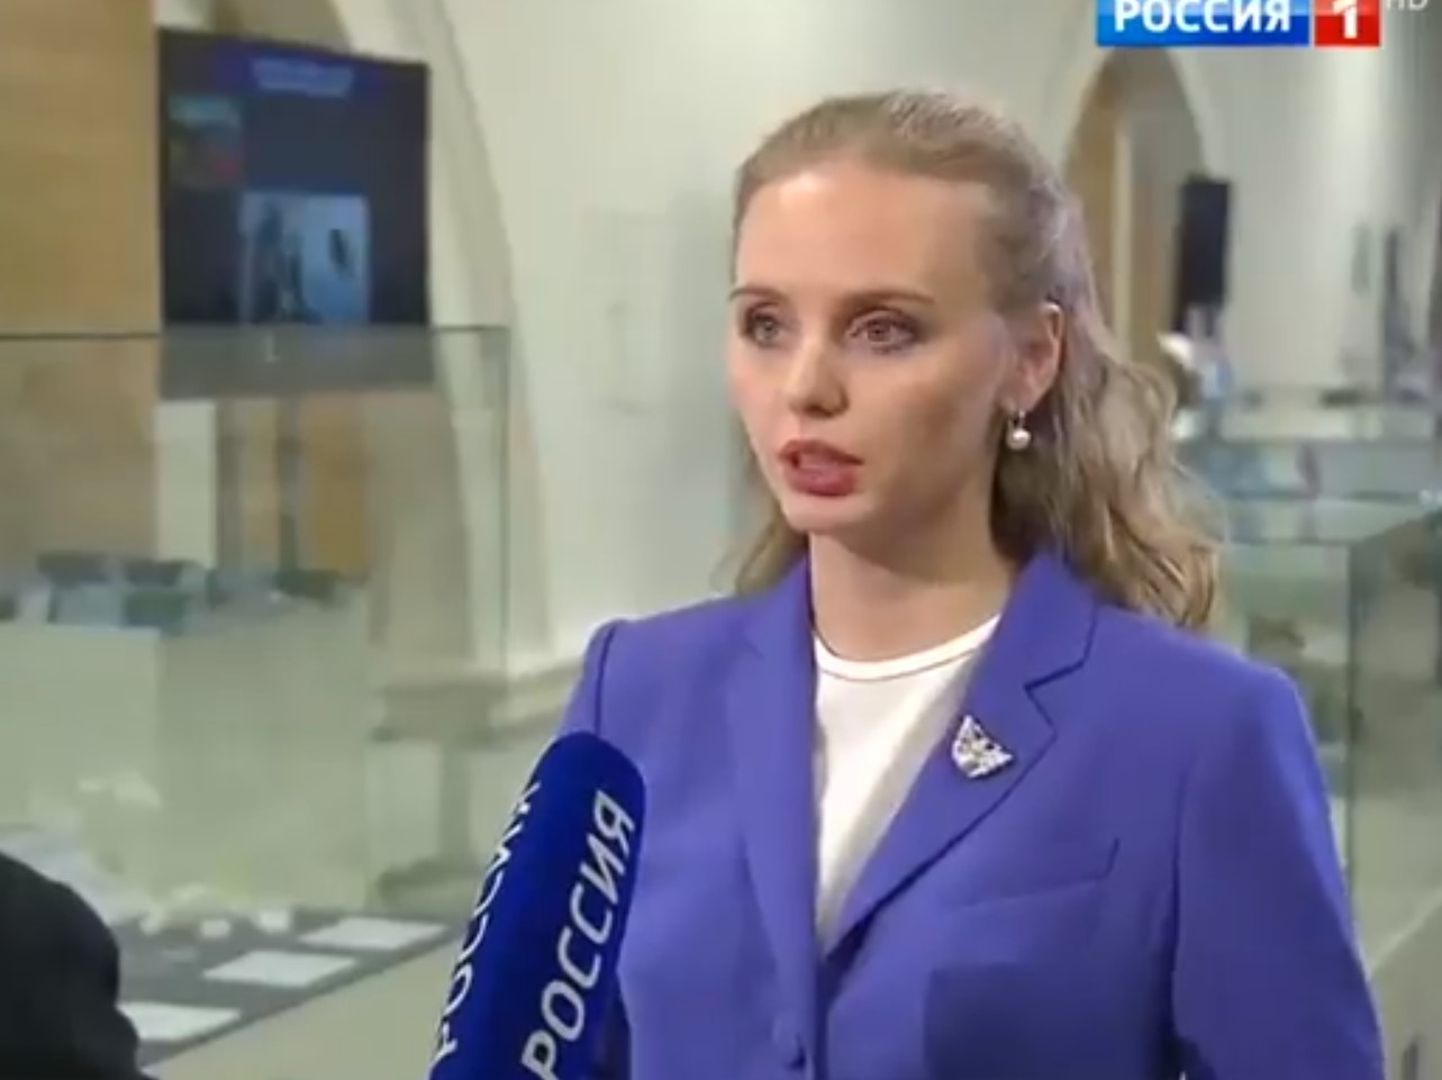 Марию Воронцову в СМИ называют старшей дочерью президента России, сам он родство с ней не подтверждал, но и не опровергал